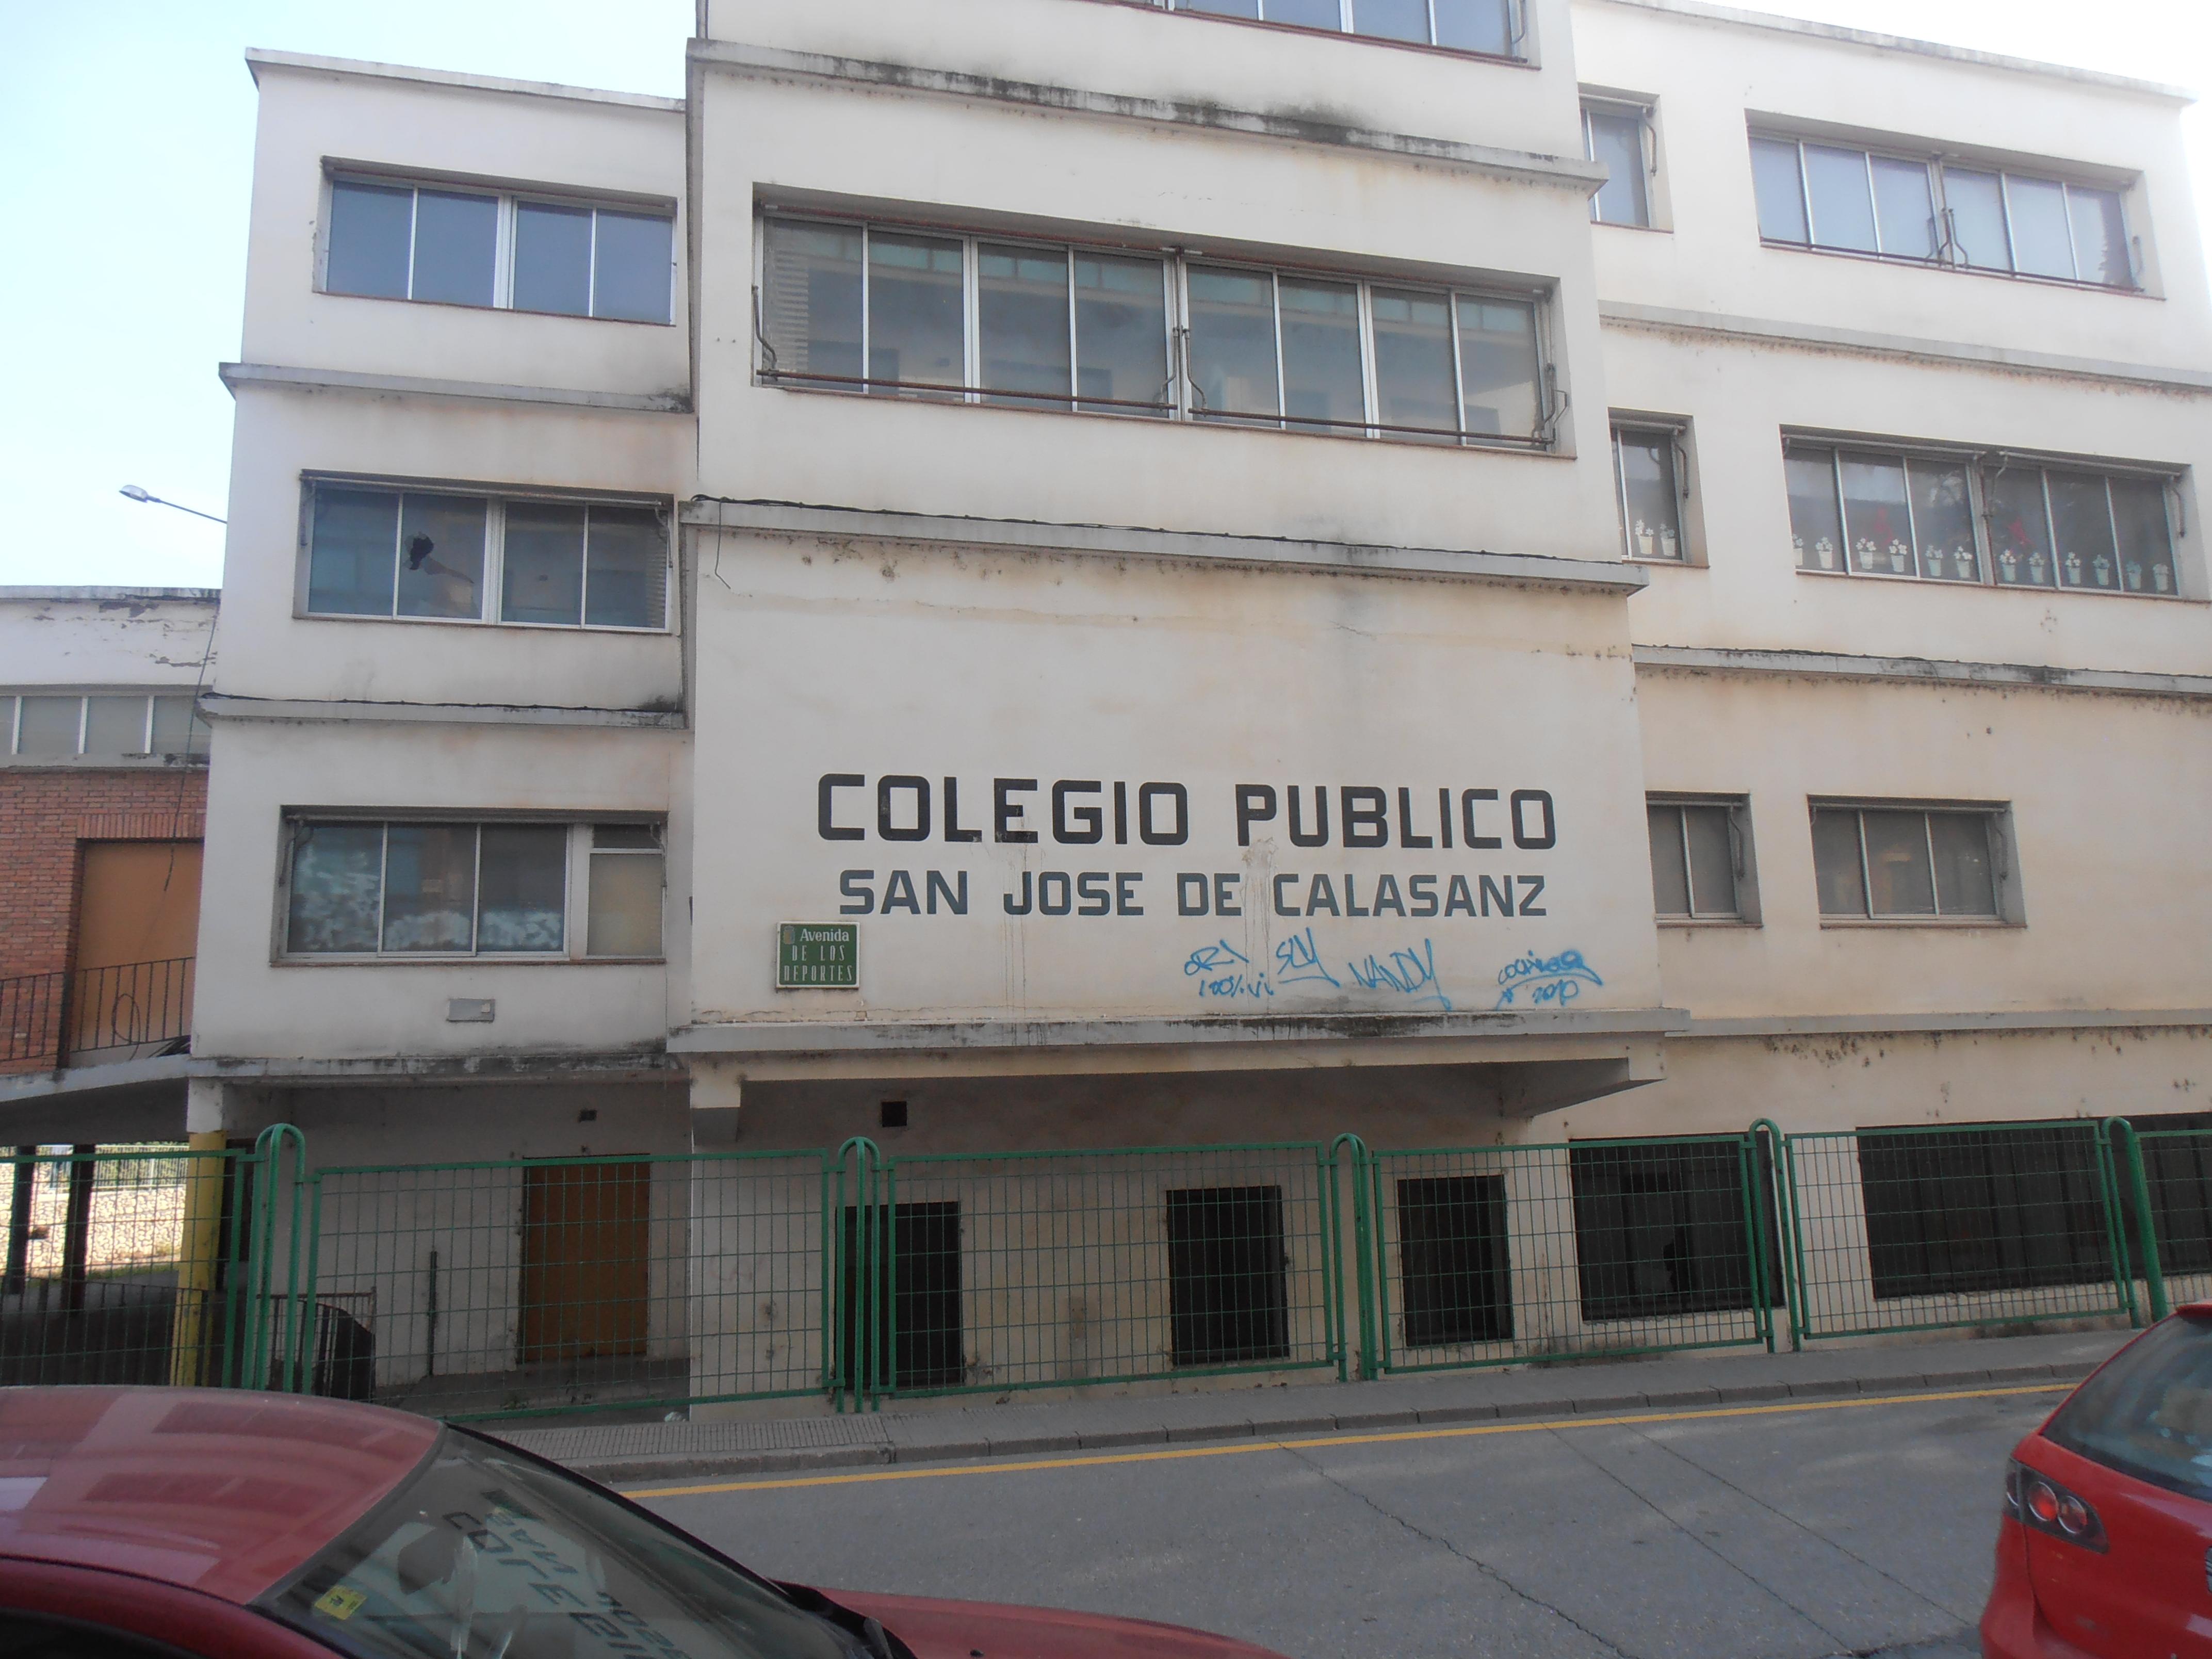 Instamos al Ayuntamiento de Fraga a solucionar la situación de abandono del antiguo edificio del colegio San José de Calasanz